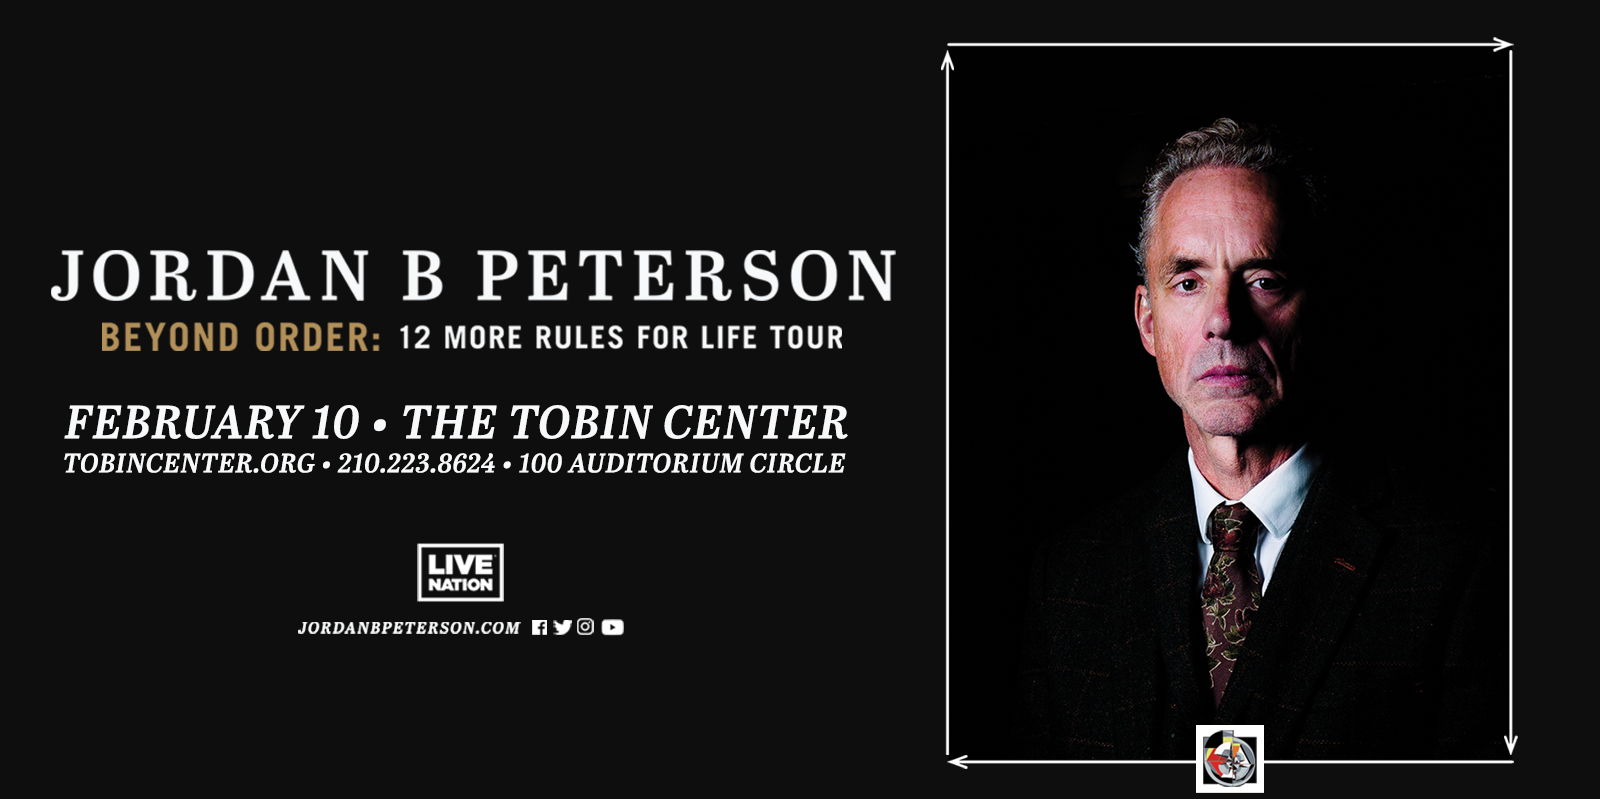 Dr. Jordan Peterson promotional image